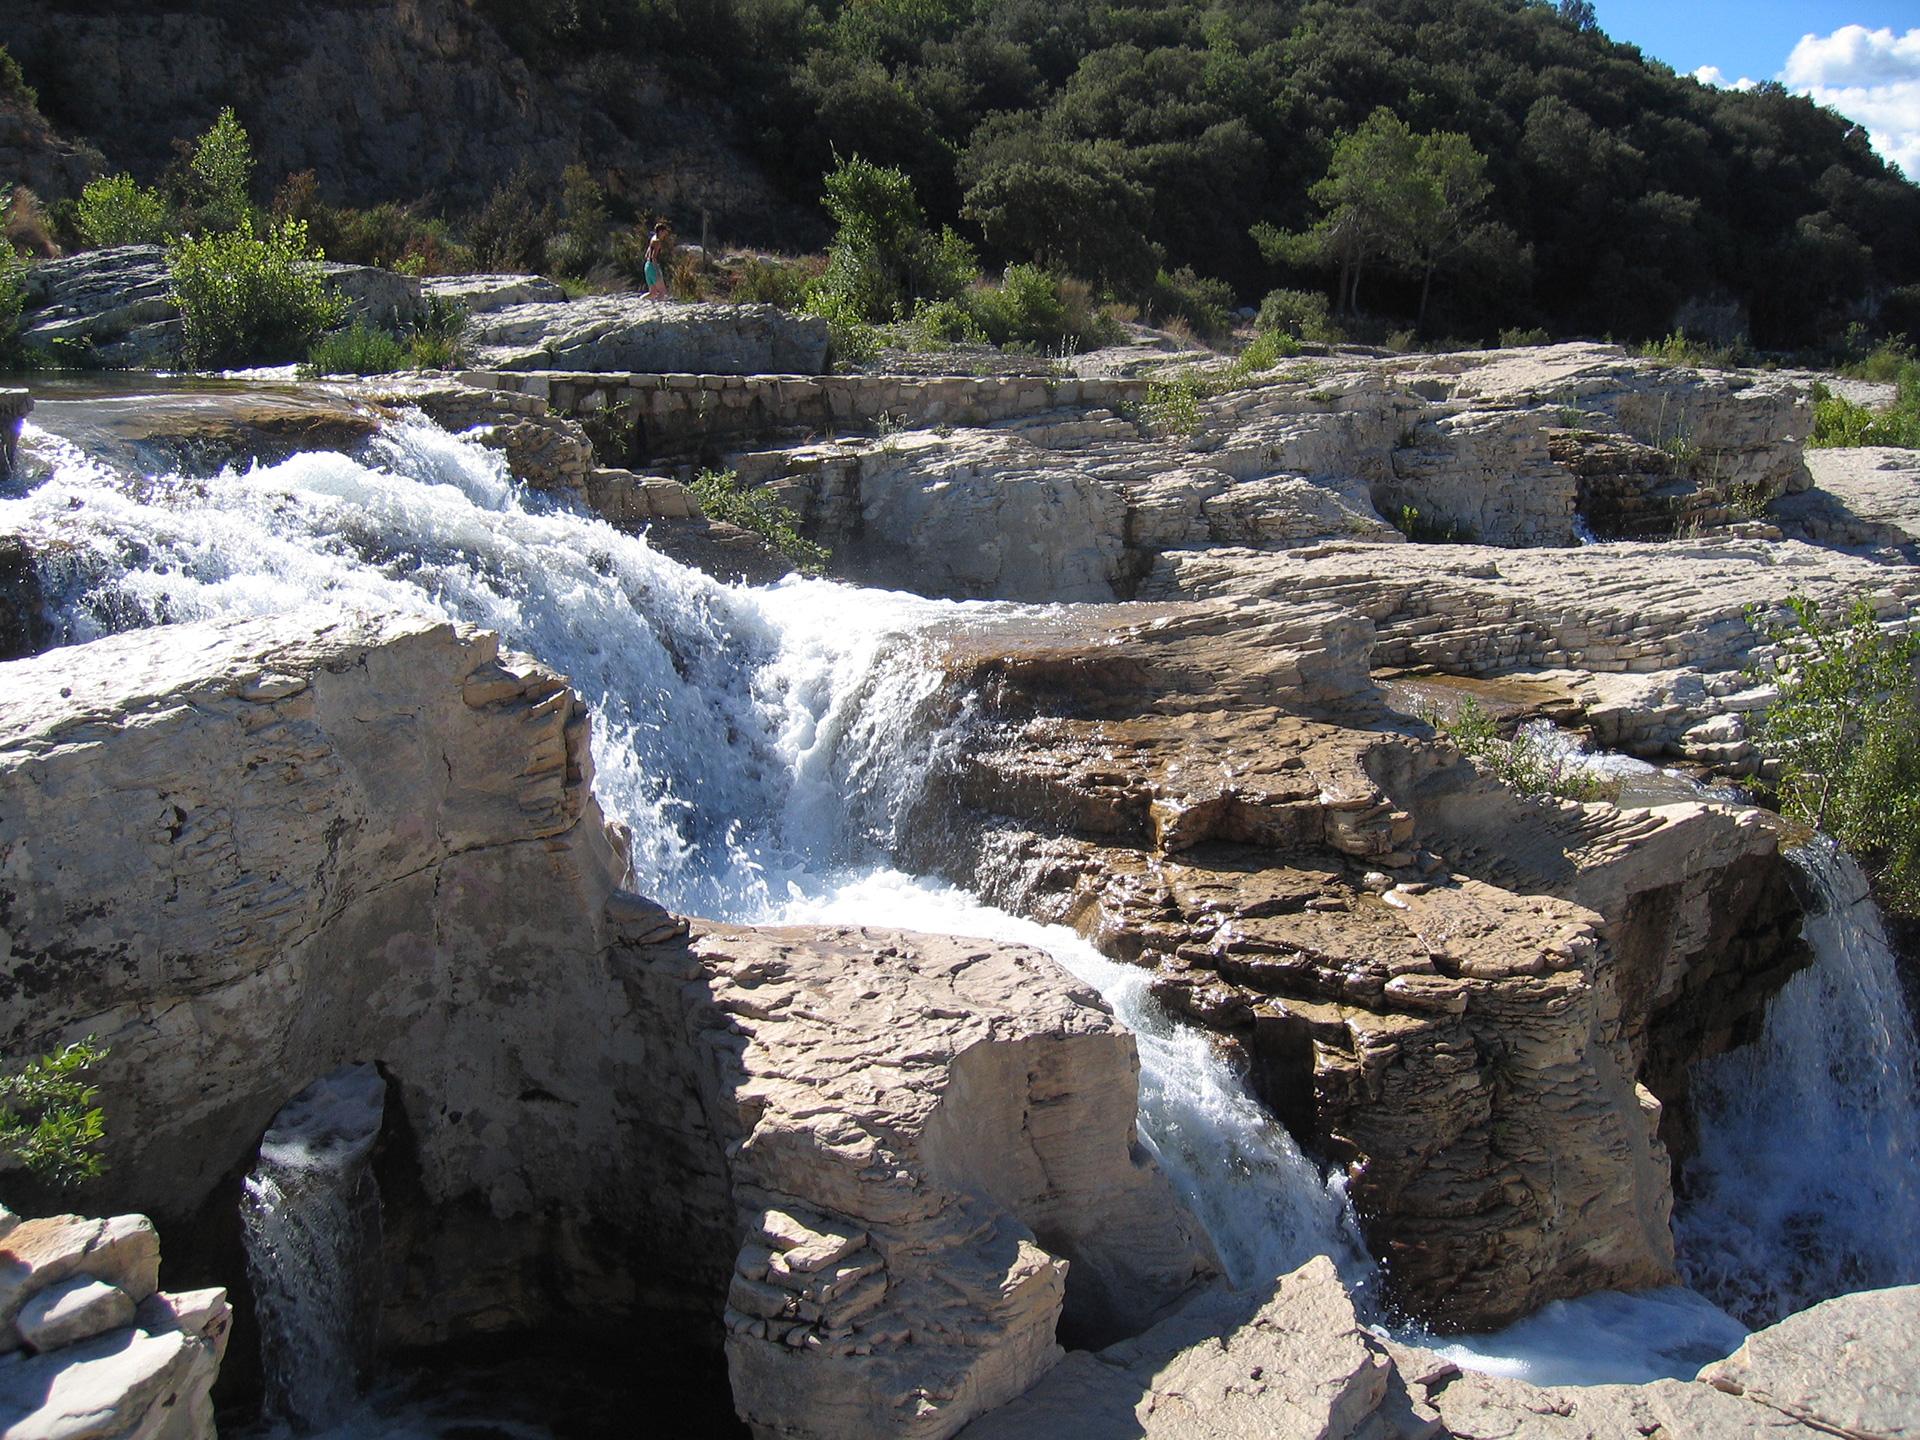 The Sautadet falls, Gard